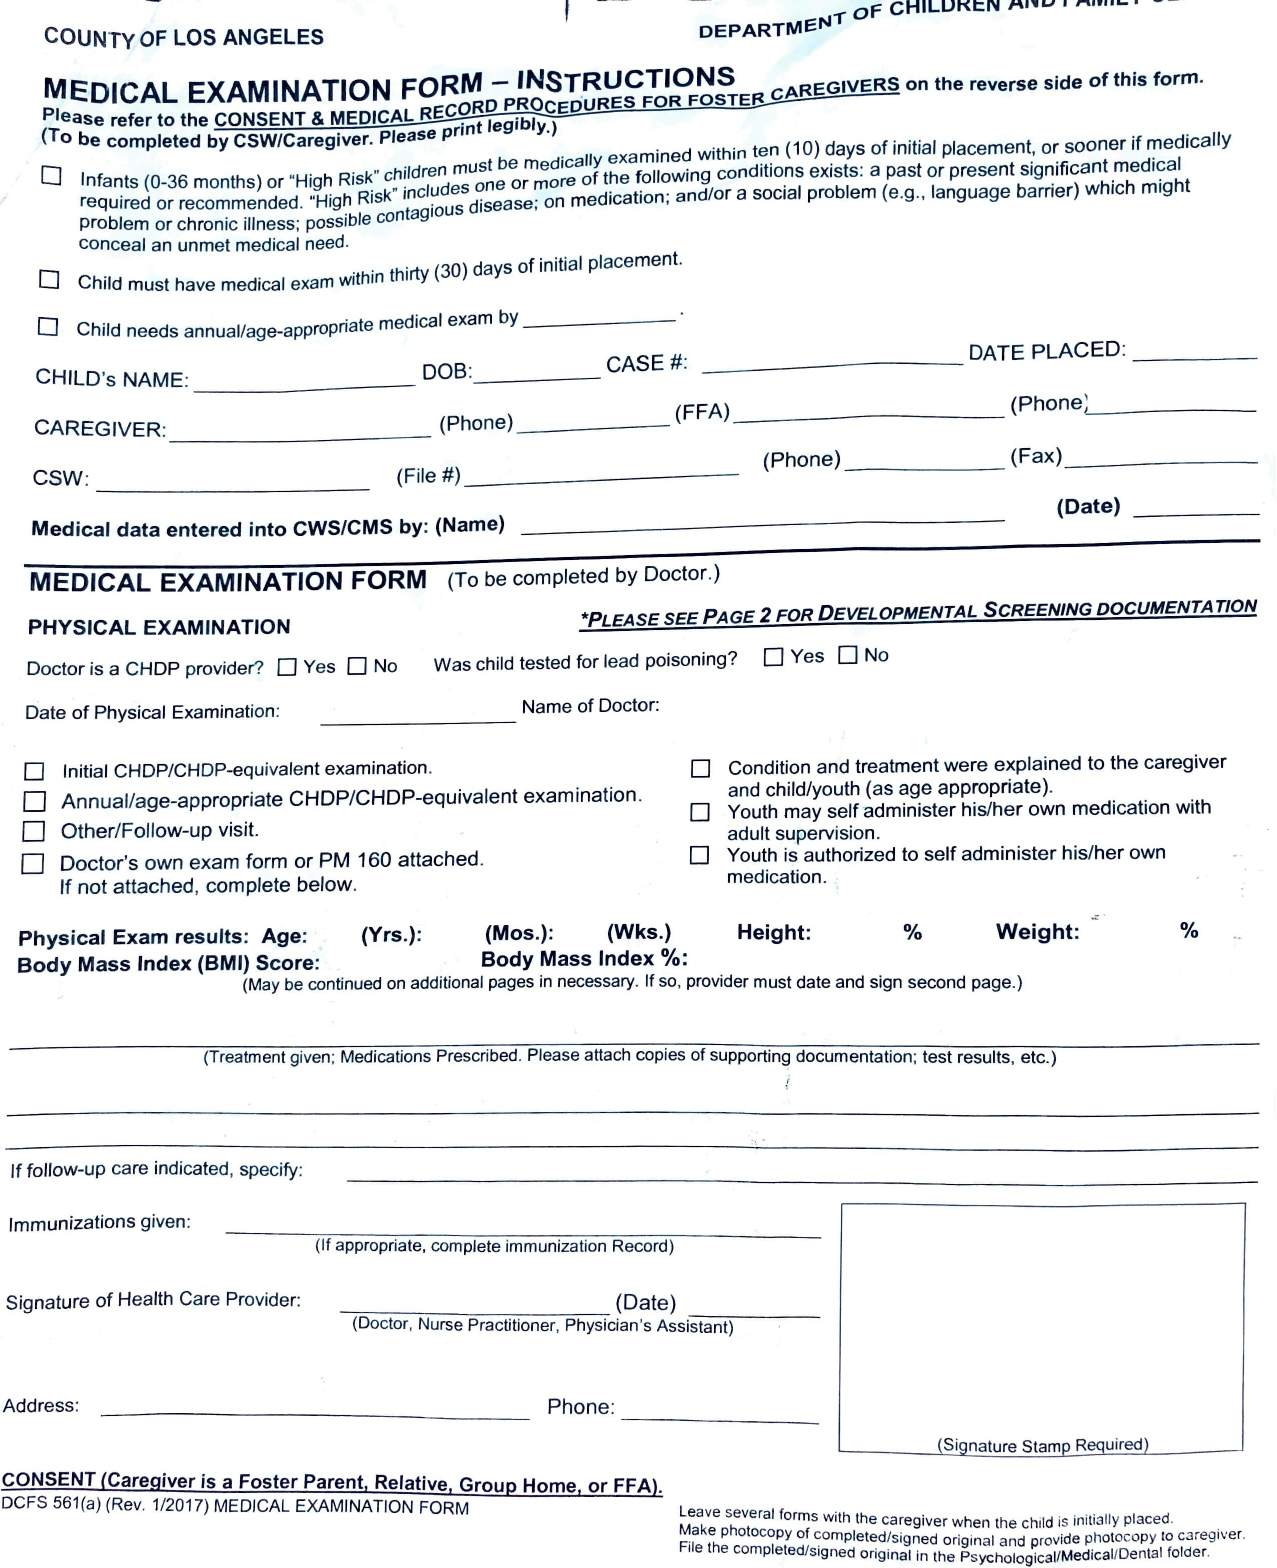 DCFS 561 A Medical Form